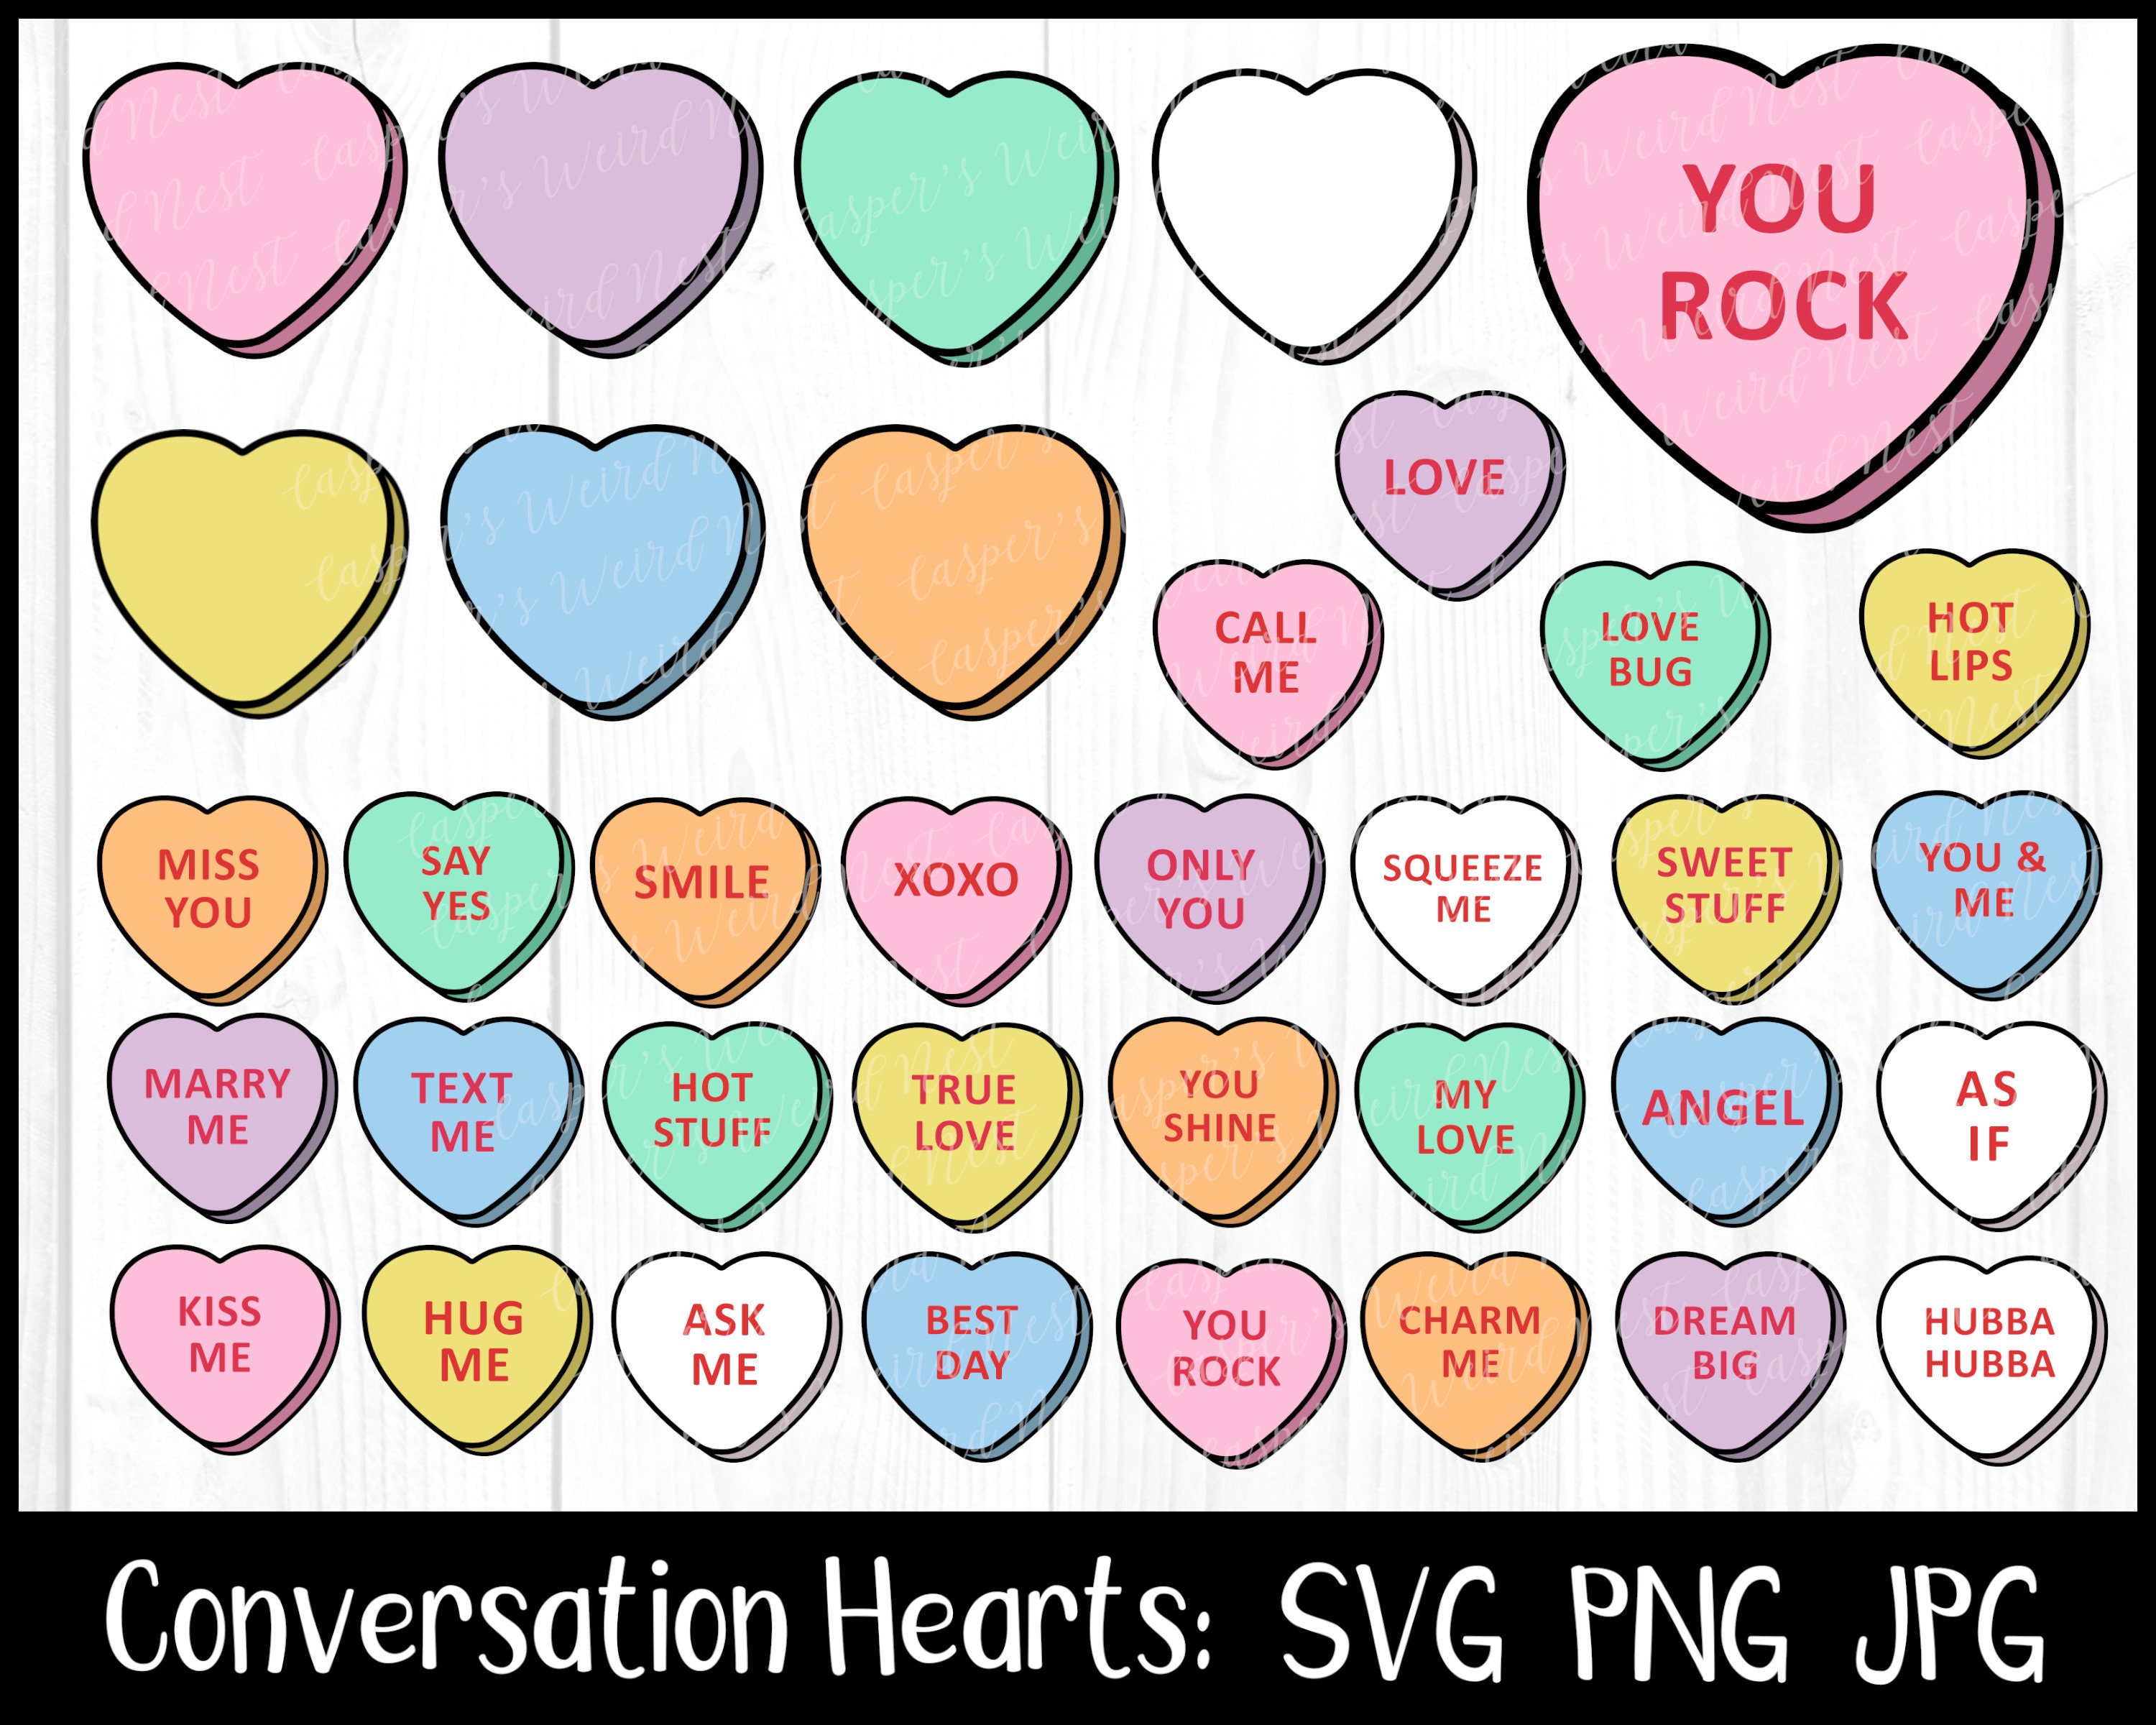 Custom Candy Hearts: 1500 Personalized Hearts – MyCustomCandy